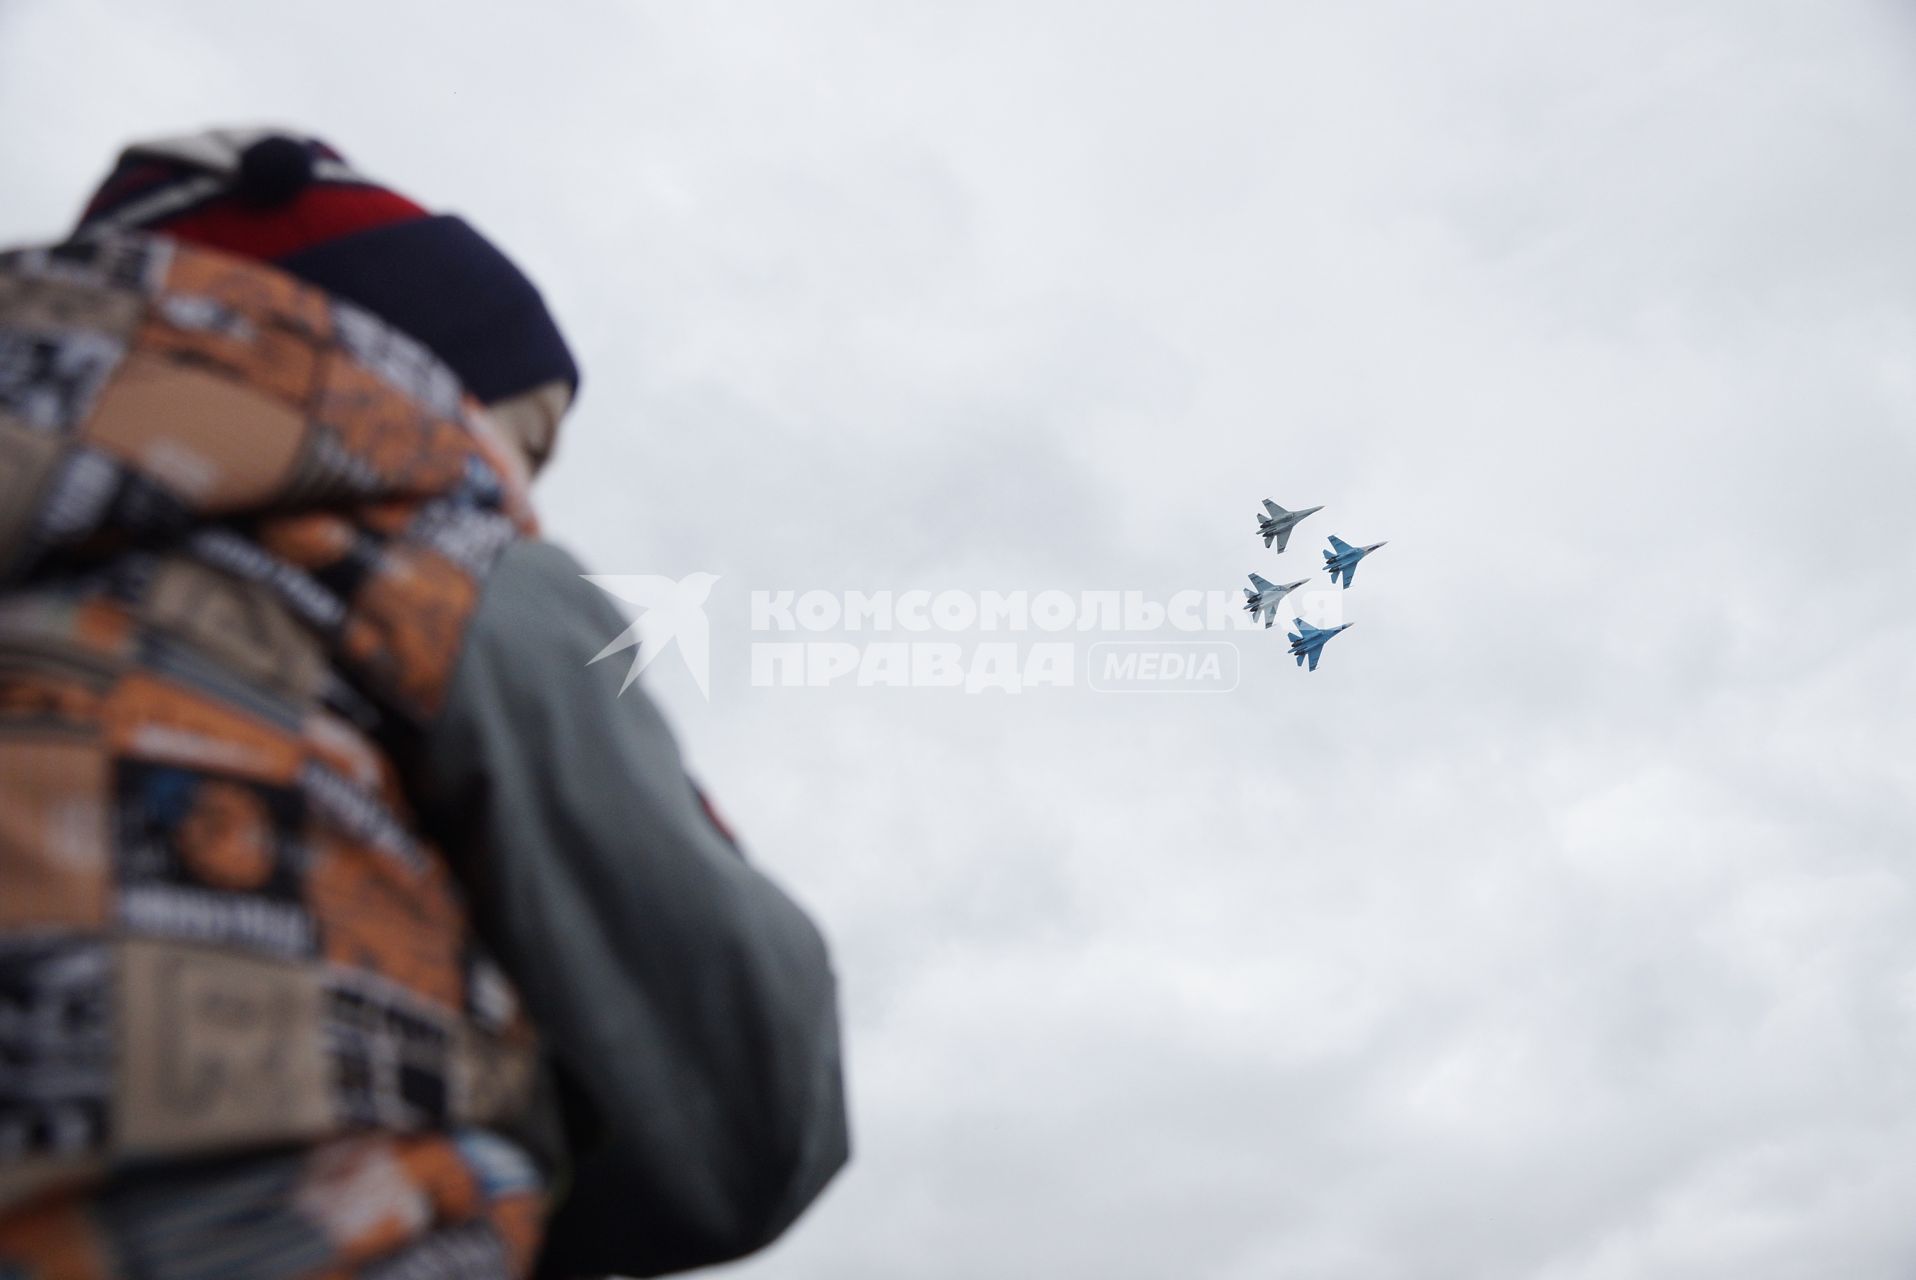 Нижний Тагил. Посетители наблюдают за полетом пилотажной группы `Соколы России` Су-27 на 10-ой международной выставке вооружений `Russia Arms Expo - 2015`.